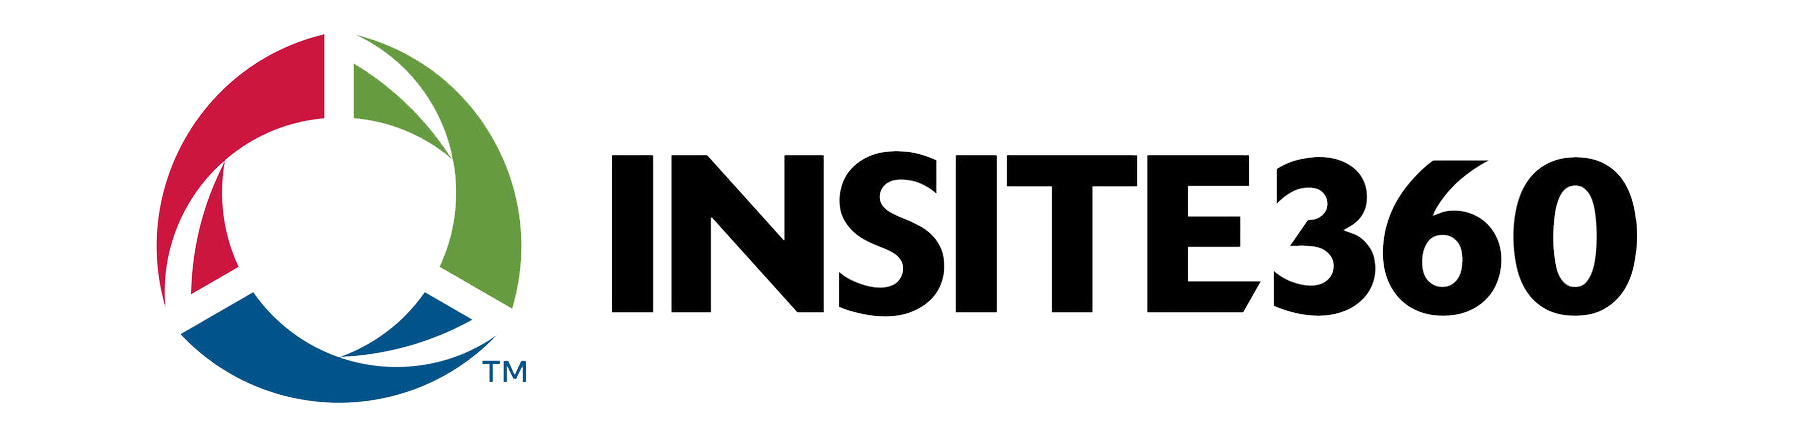 Insite360 logo